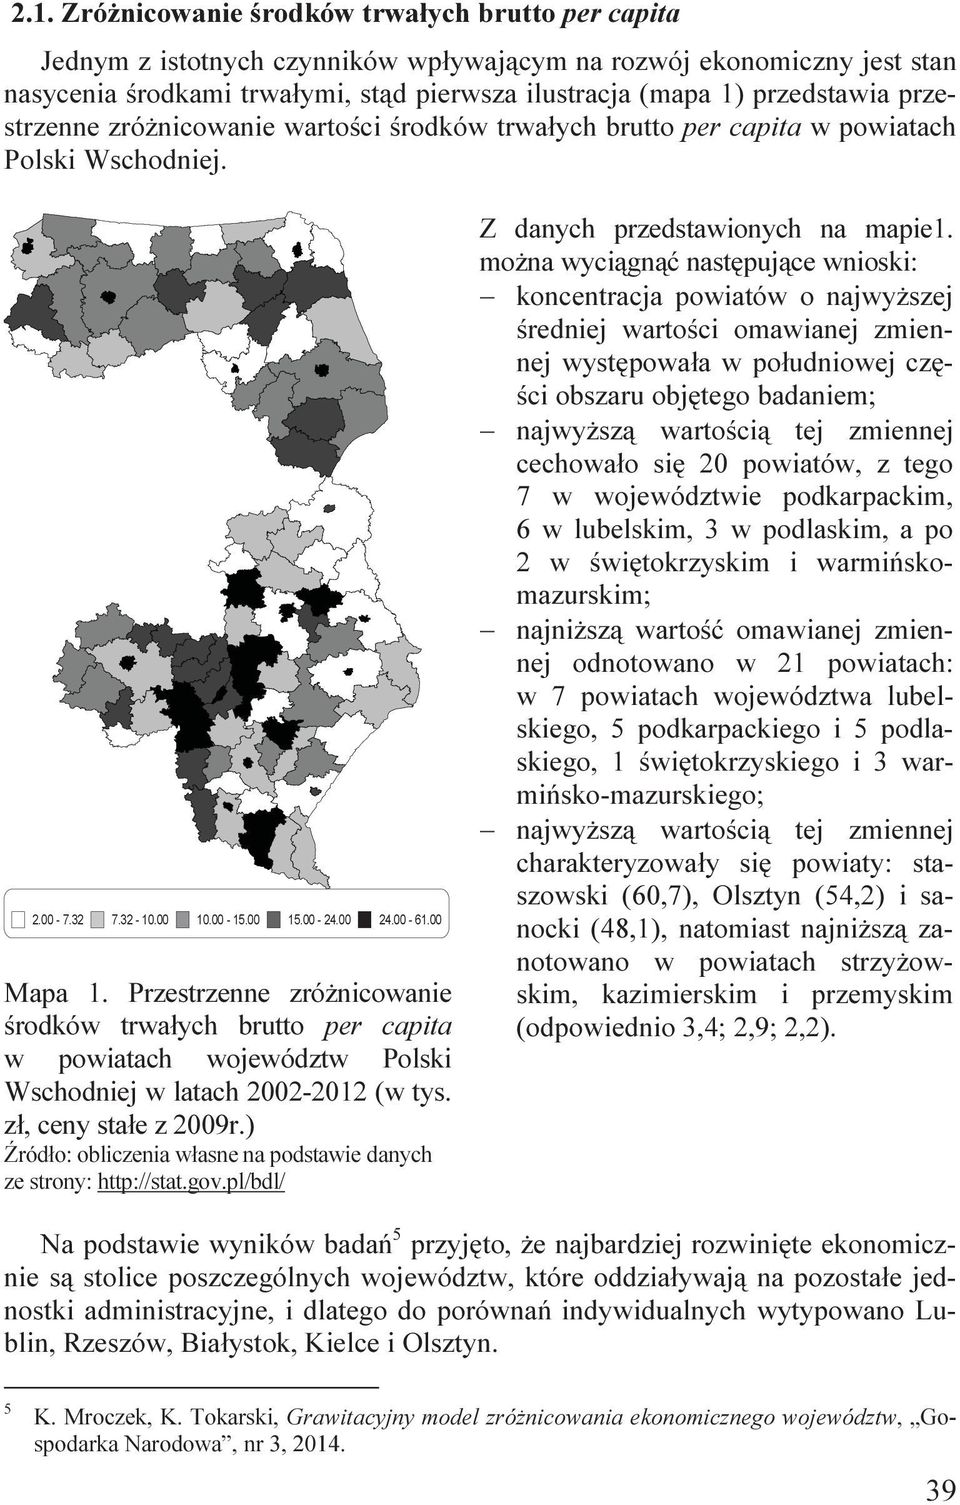 Przestrzenne zróżncowane środków trwałych brutto per capta w powatach województw Polsk Wschodnej w latach 2002-2012 (w tys. zł, ceny stałe z 2009r.